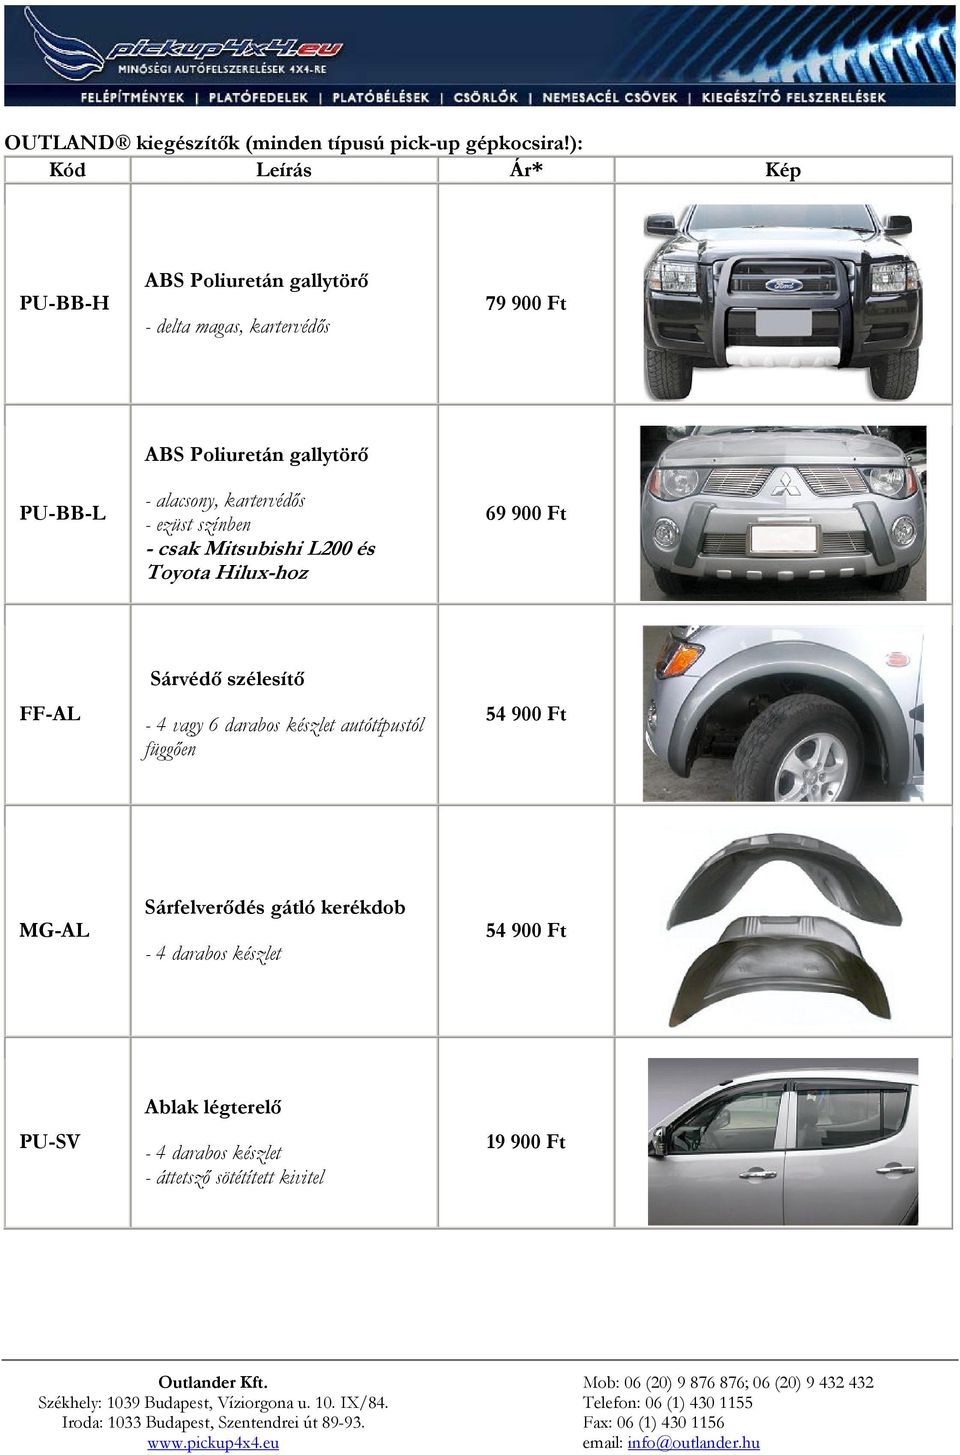 kartervédős - ezüst színben - csak Mitsubishi L200 és Toyota Hilux-hoz 69 900 Ft FF-AL Sárvédő szélesítő - 4 vagy 6